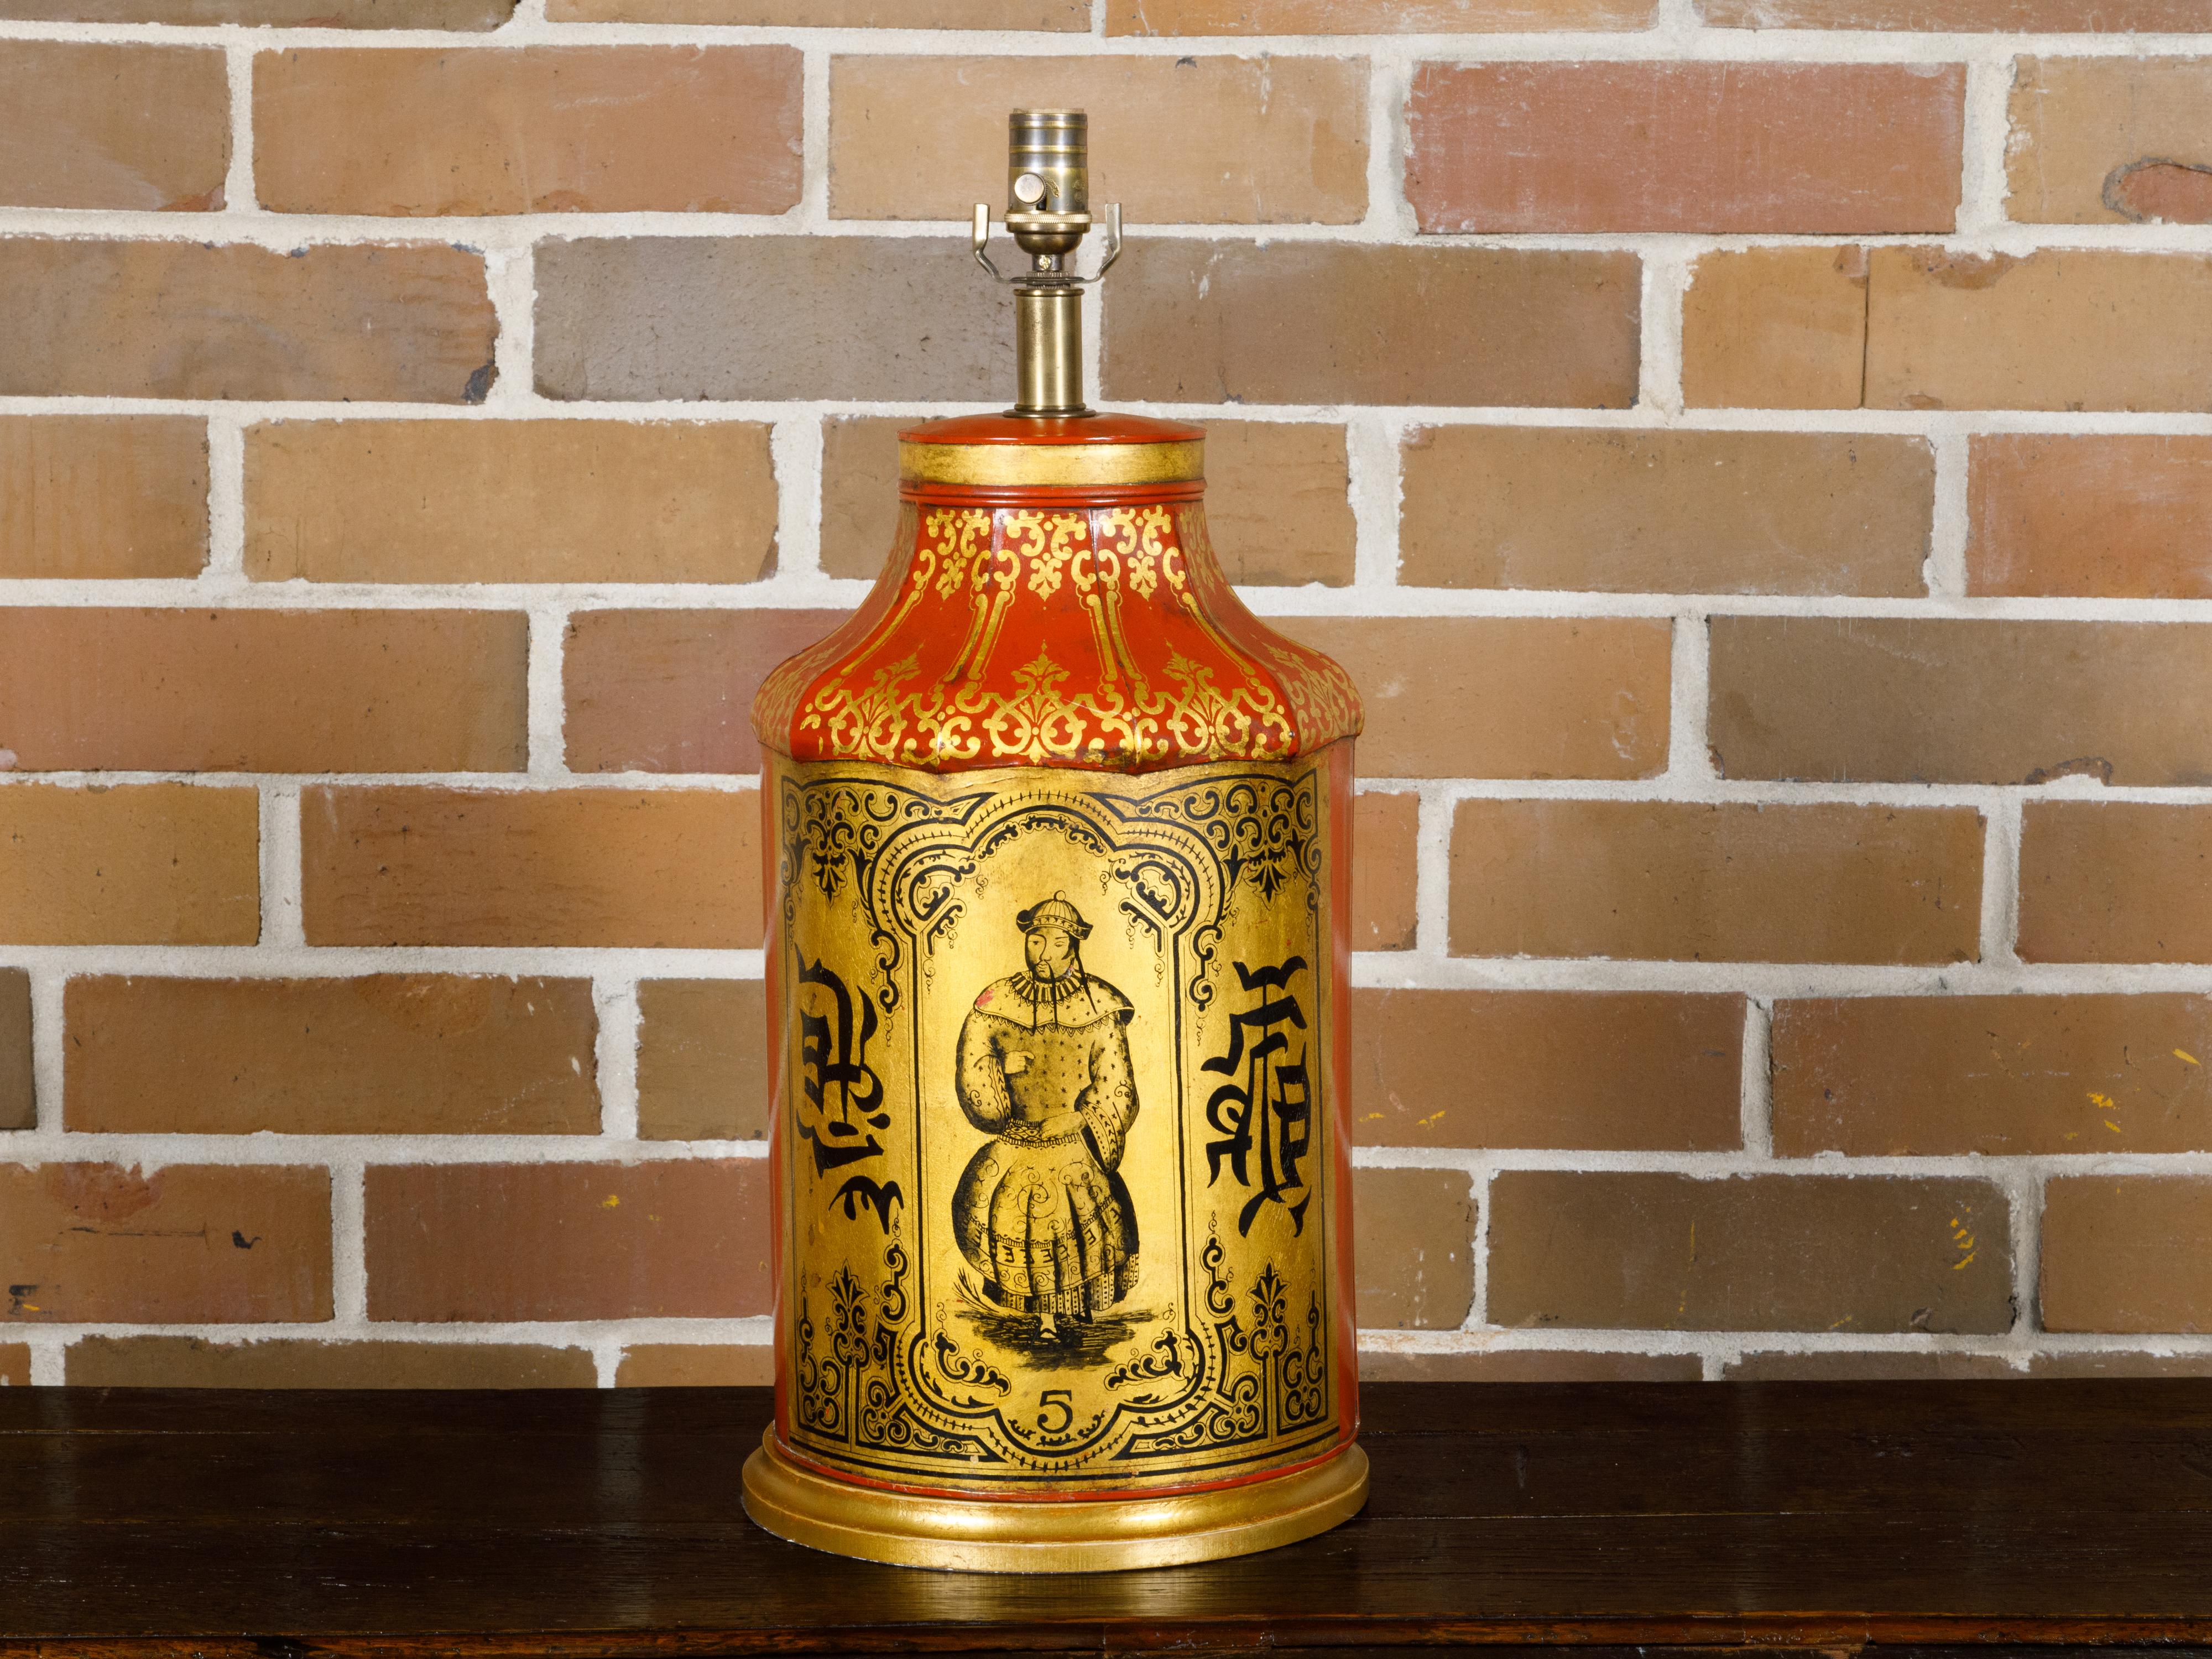 Eine englische Chinoiserie-Teekanne in Rot und Gold aus dem 19. Jahrhundert, die zu einer Tischlampe umfunktioniert wurde, die in den USA verkabelt ist. Diese bezaubernde englische Chinoiserie-Teekanne aus dem 19. Jahrhundert, die in eine Tischlampe